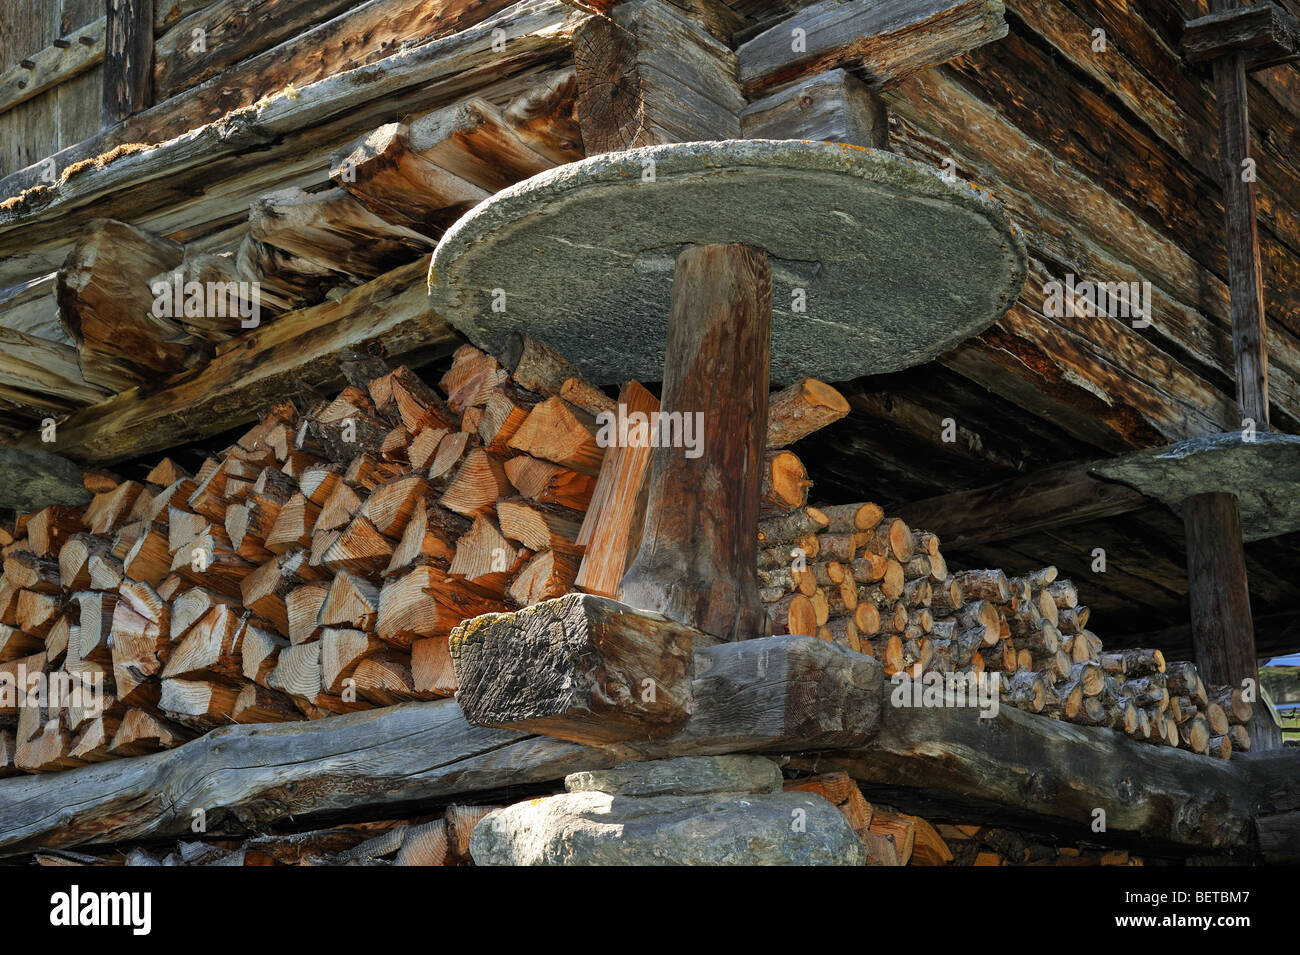 Détail de grenier traditionnel / raccard montrant dalle de pierre circulaire pour empêcher les rongeurs, Valais, Suisse Banque D'Images